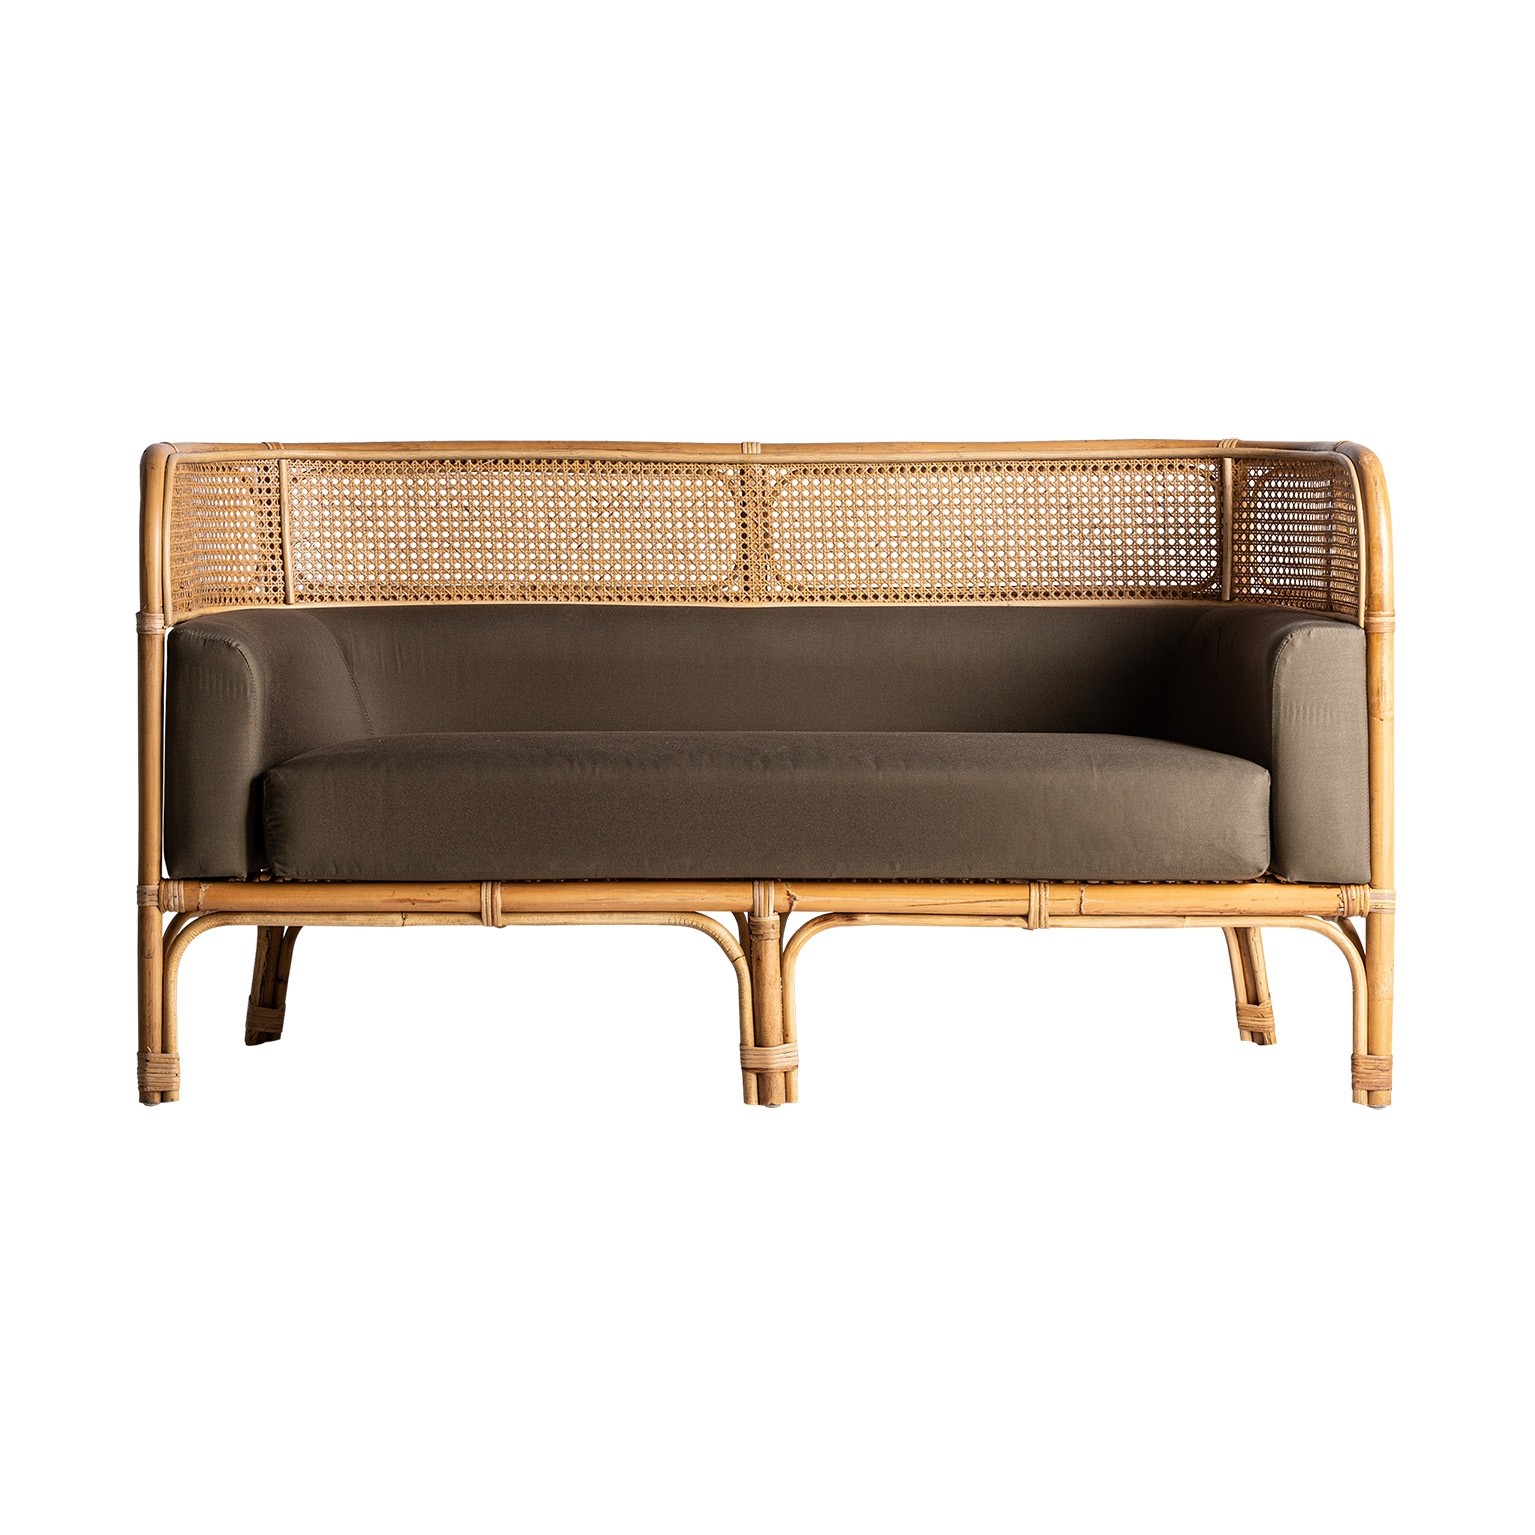 Estila Luxusní ratanová sedačka Aldea do obývacího pokoje v naturálním odstínu s hnědým velbloudním textilním potahem 140cm